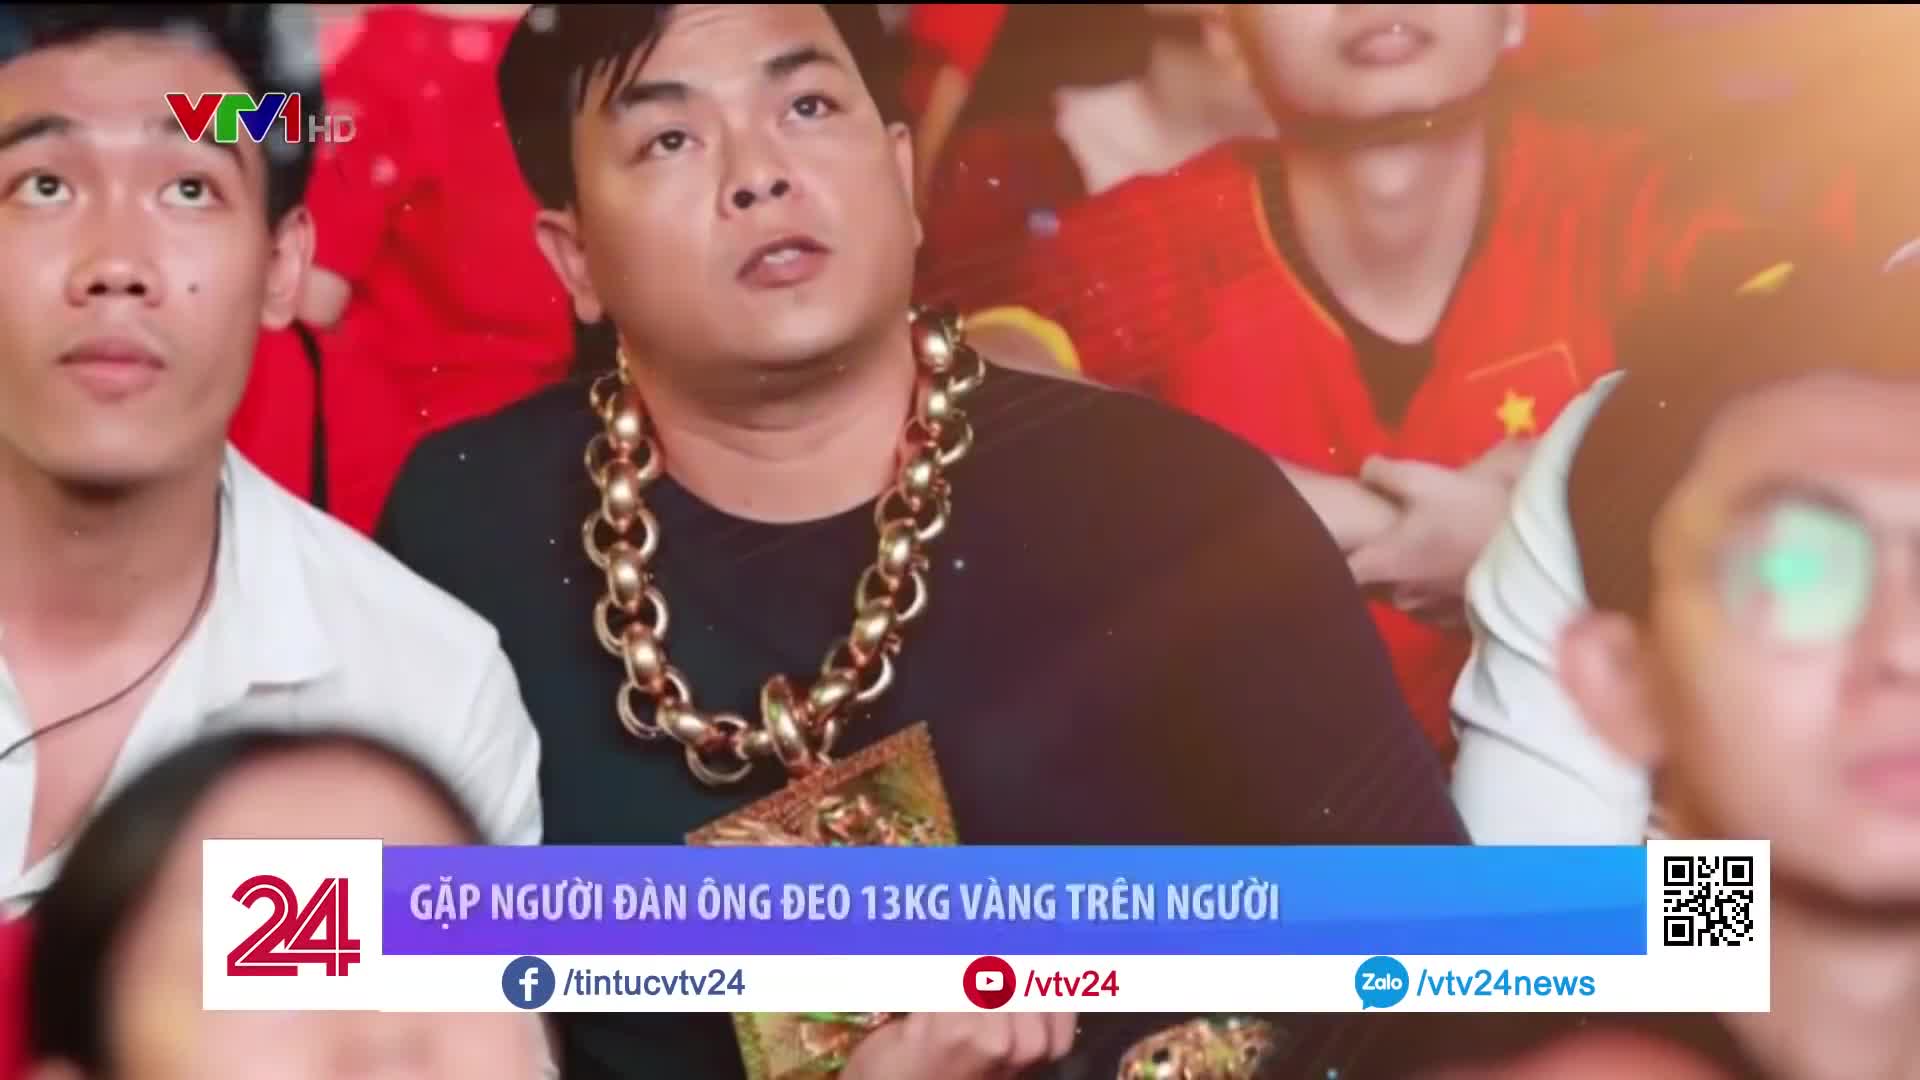 Phúc XO từng được lên truyền hình vì lập kỷ lục đeo vàng nhiều nhất Việt Nam